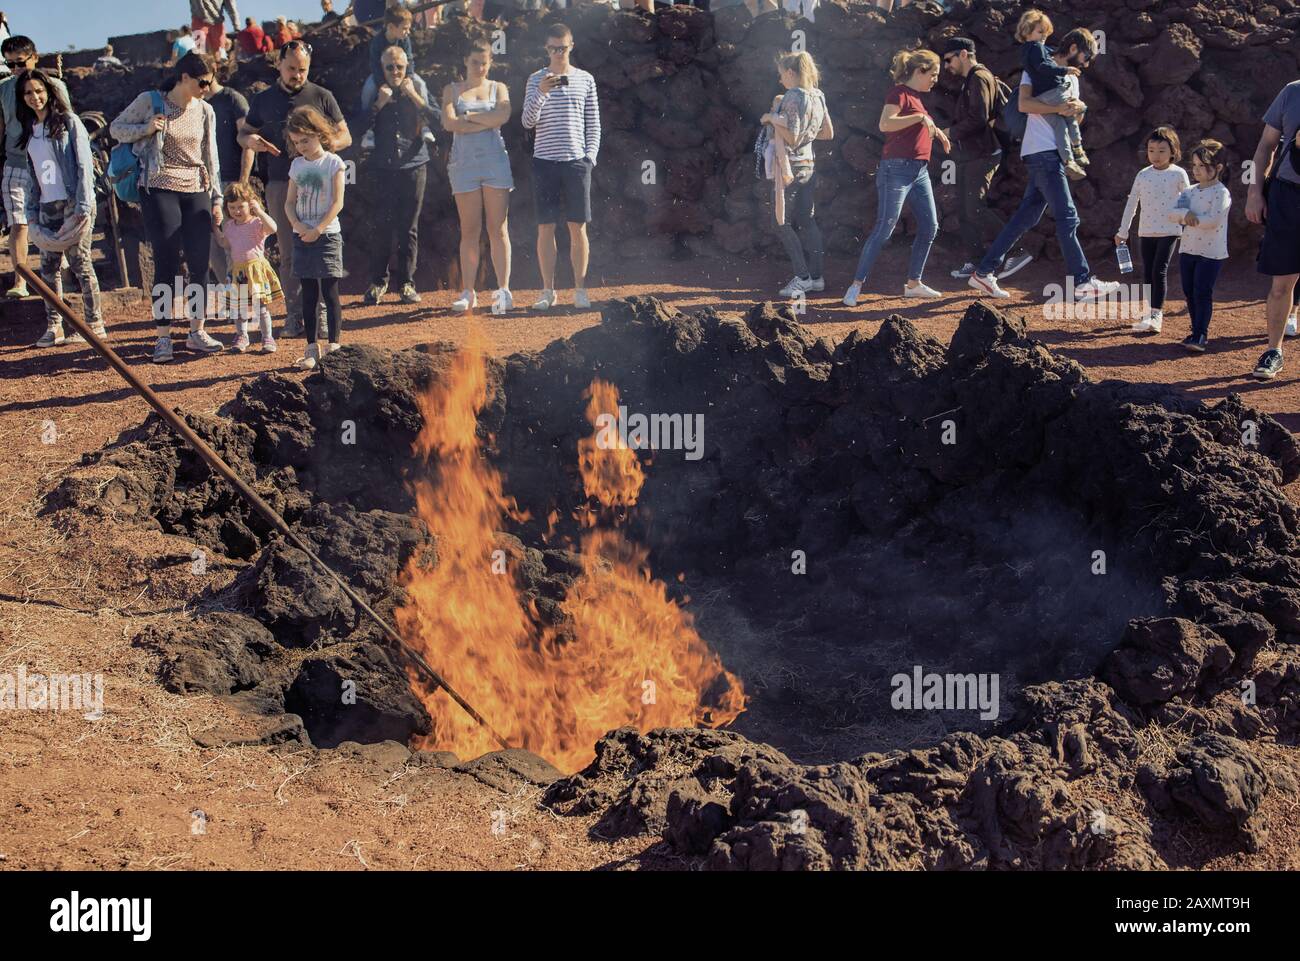 Lanzarote, Islas Canarias, España - 28 de diciembre de 2019: El calor del volcán Timanfaya causa fuego caliente de la paca de heno en el Parque Nacional de Timanfaya en Lanzarote. Los turistas están observando el fuego. Foto de stock